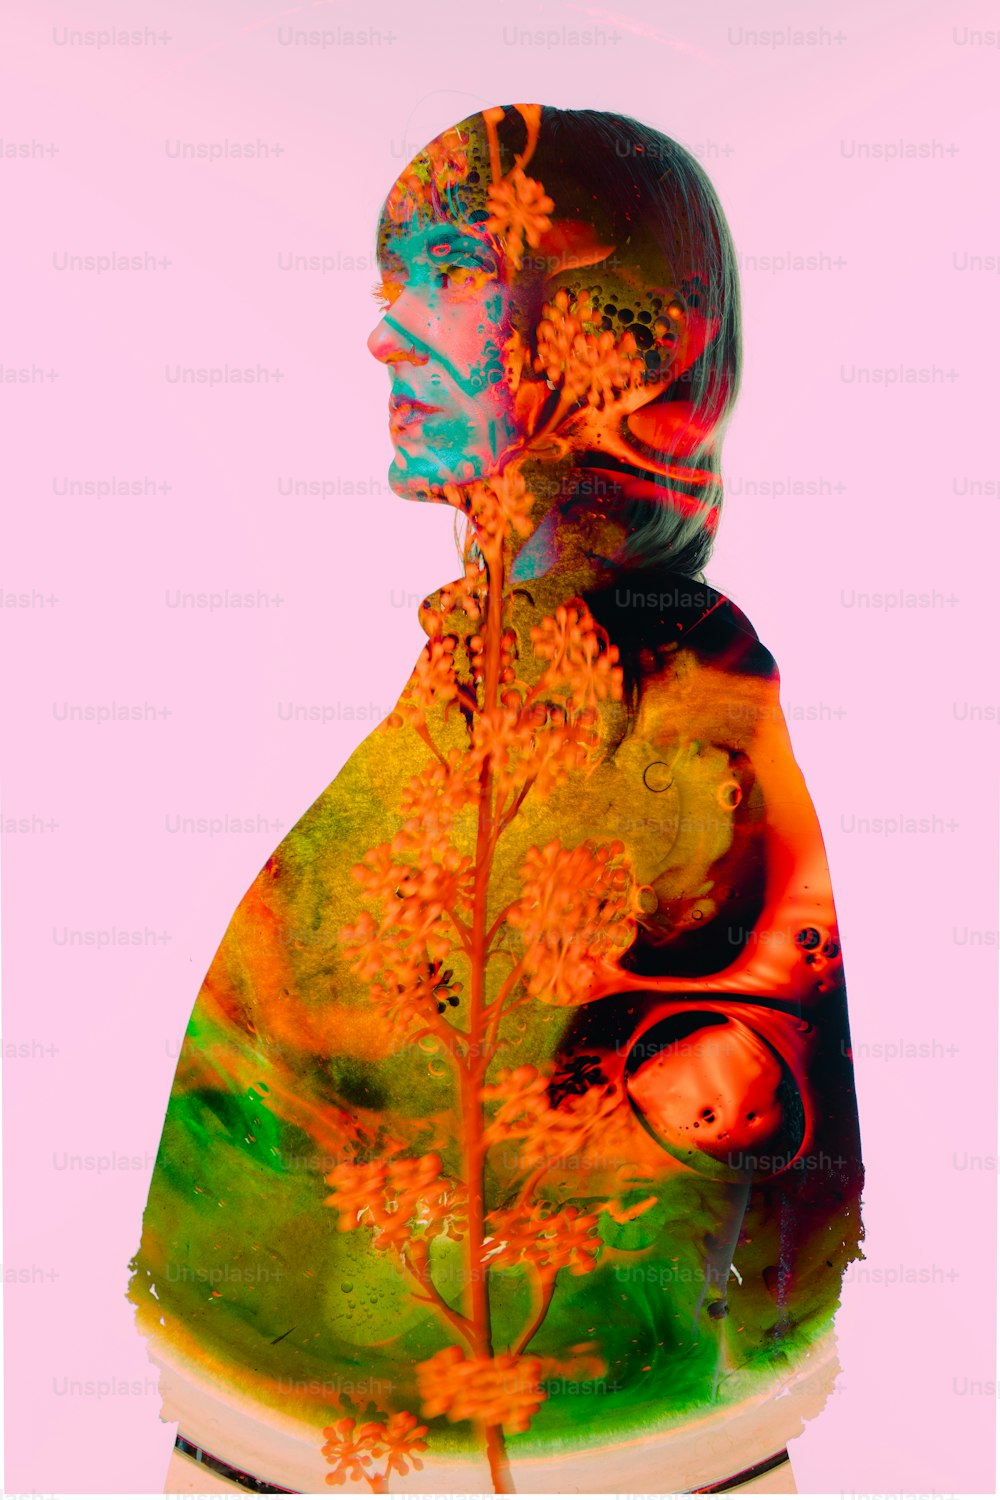 Le visage d’une femme est représenté dans une image multicolore